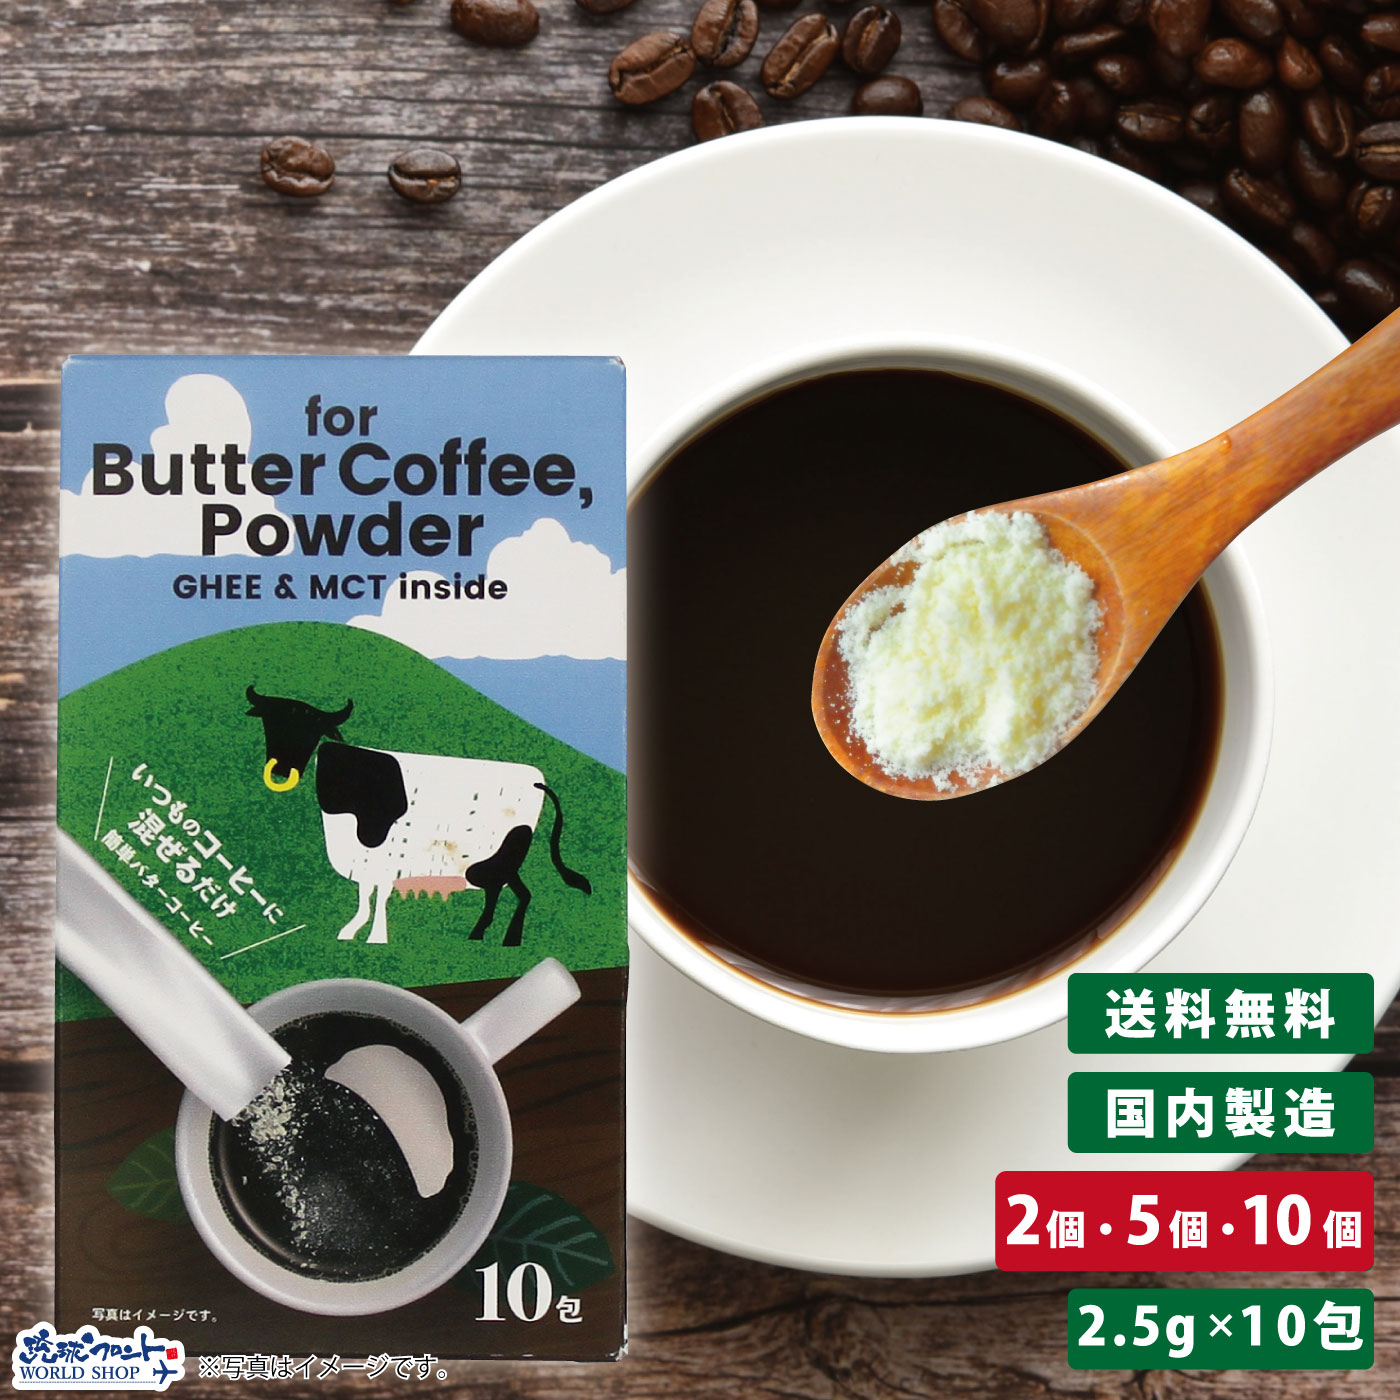 バターコーヒー パウダー 2.5g×10包 5個 MCTオイル RF バターコーヒー パウダータイプ ダイエット ファスティング 粉末 インスタント いつものコーヒーに混ぜるだけ 簡単 琉球フロント 送料無料 mry